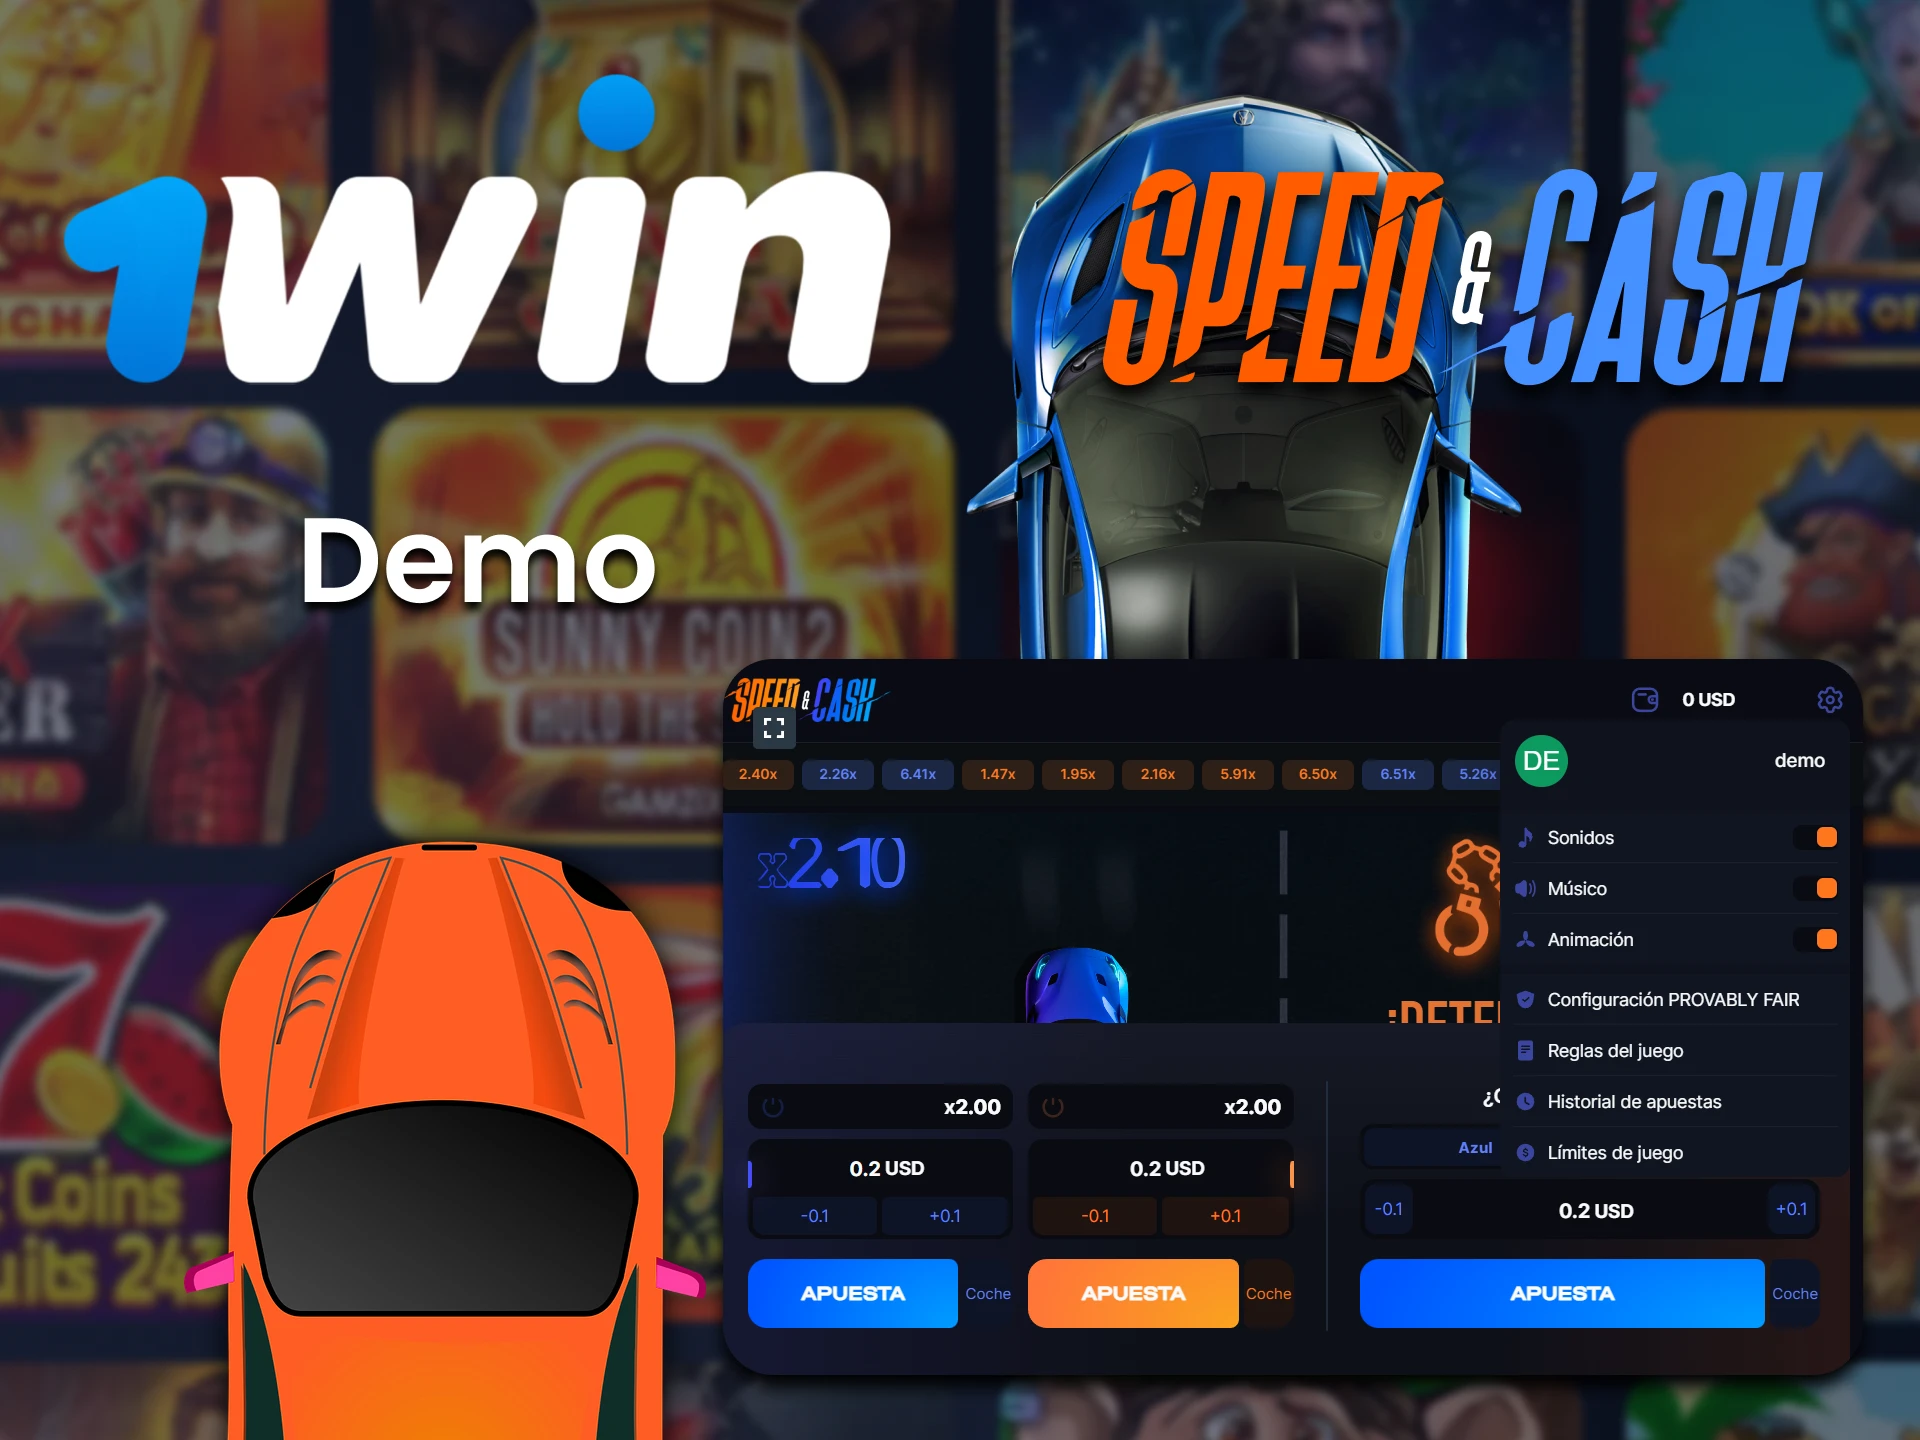 Entrena en la versión demo del juego Speed ​​and Cash de 1win.